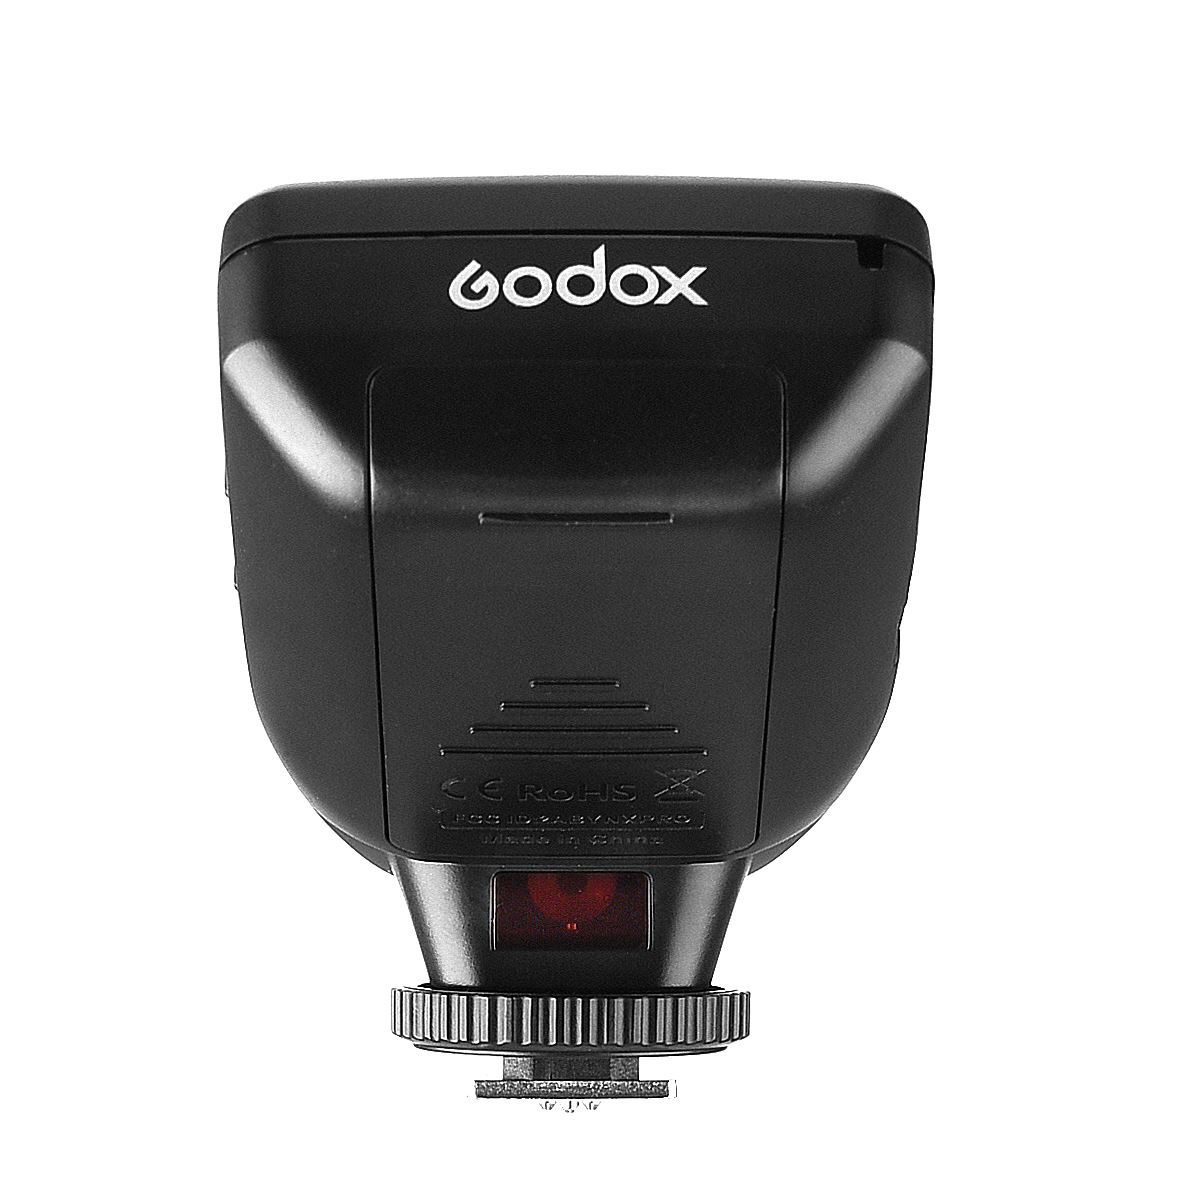 Godox XPro Sony Transmitter